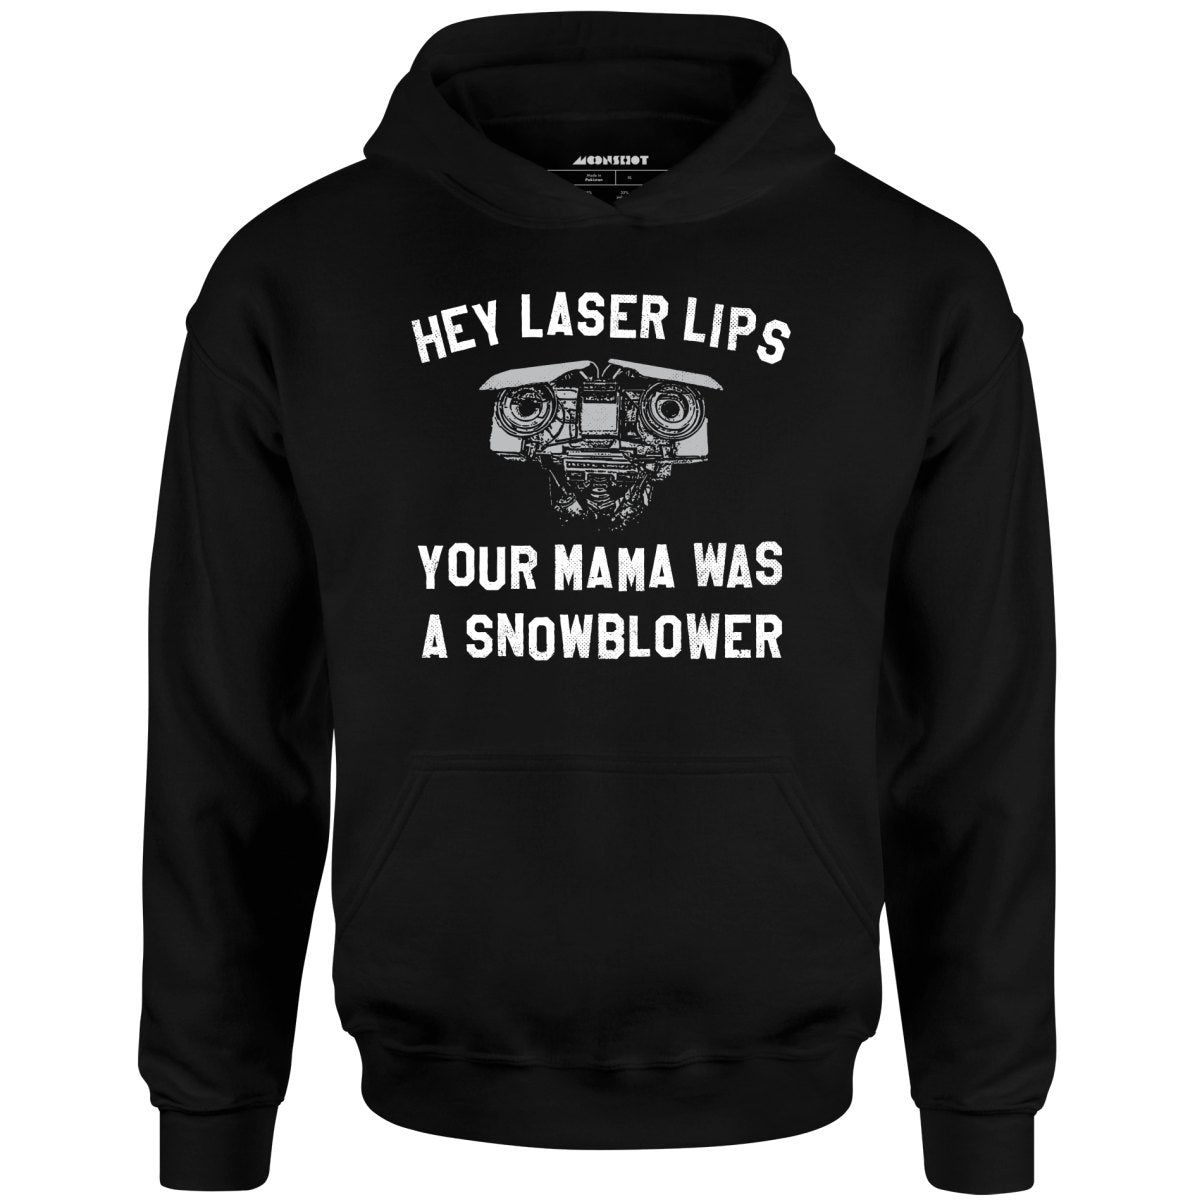 Hey Laser Lips - Unisex Hoodie